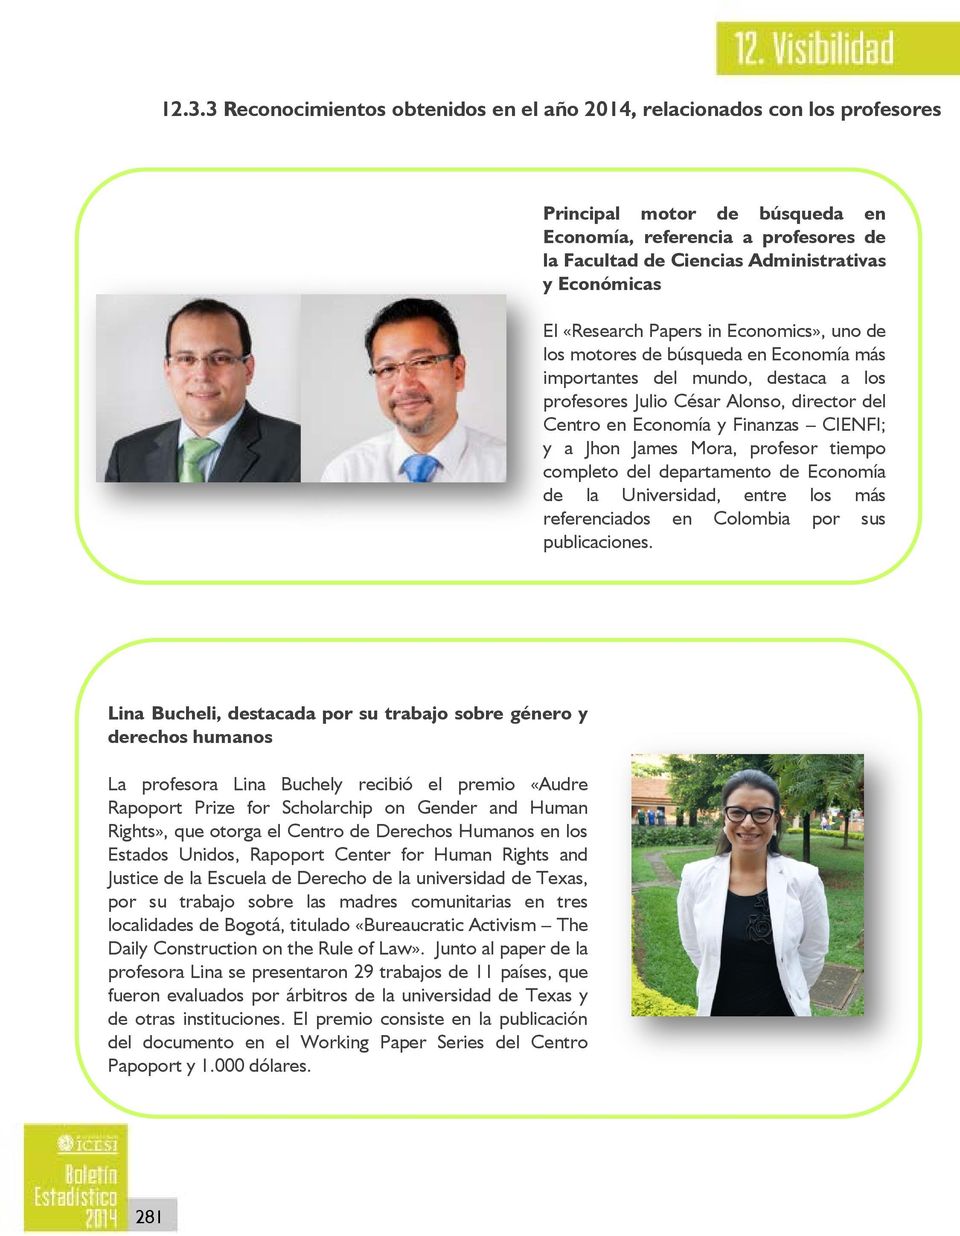 Finanzas CIENFI; y a Jhon James Mora, profesor tiempo completo del departamento de Economía de la Universidad, entre los más referenciados en Colombia por sus publicaciones.